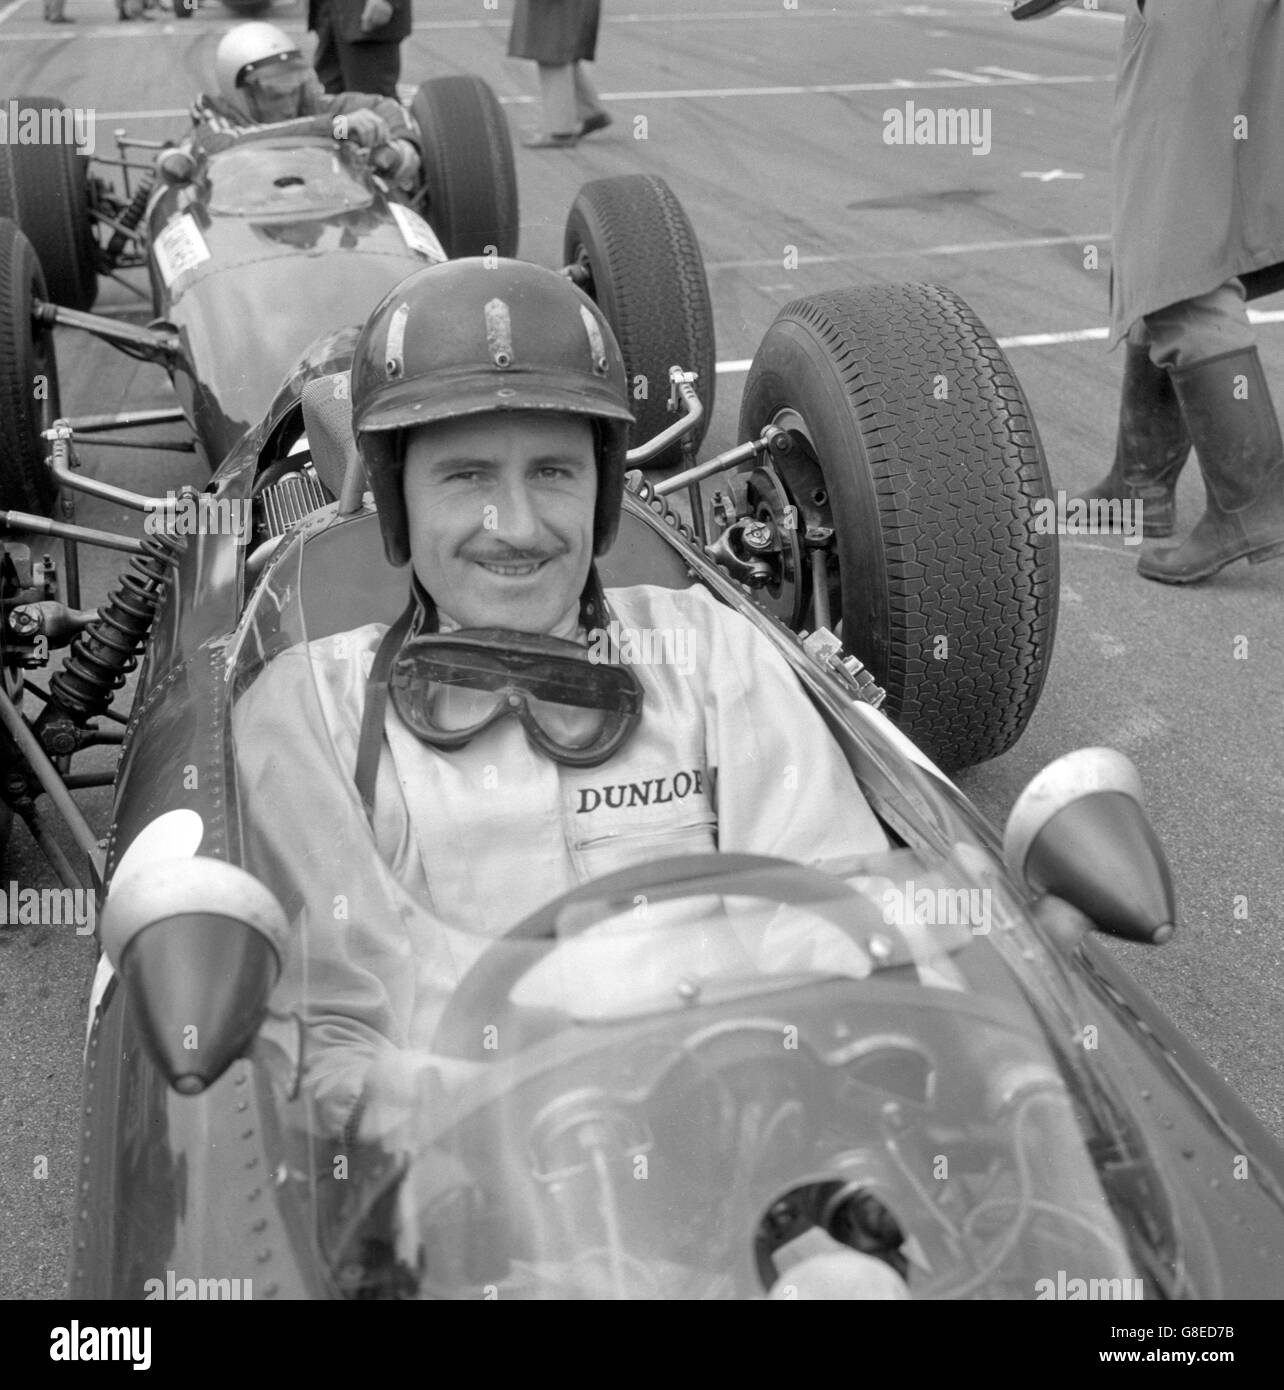 Motor Racing - Formula uno - Graham Hill. Il driver britannico Graham Hill (BRM), che ha concluso secondo a Jack Brabham nel recente Gran Premio d'Olanda. Foto Stock